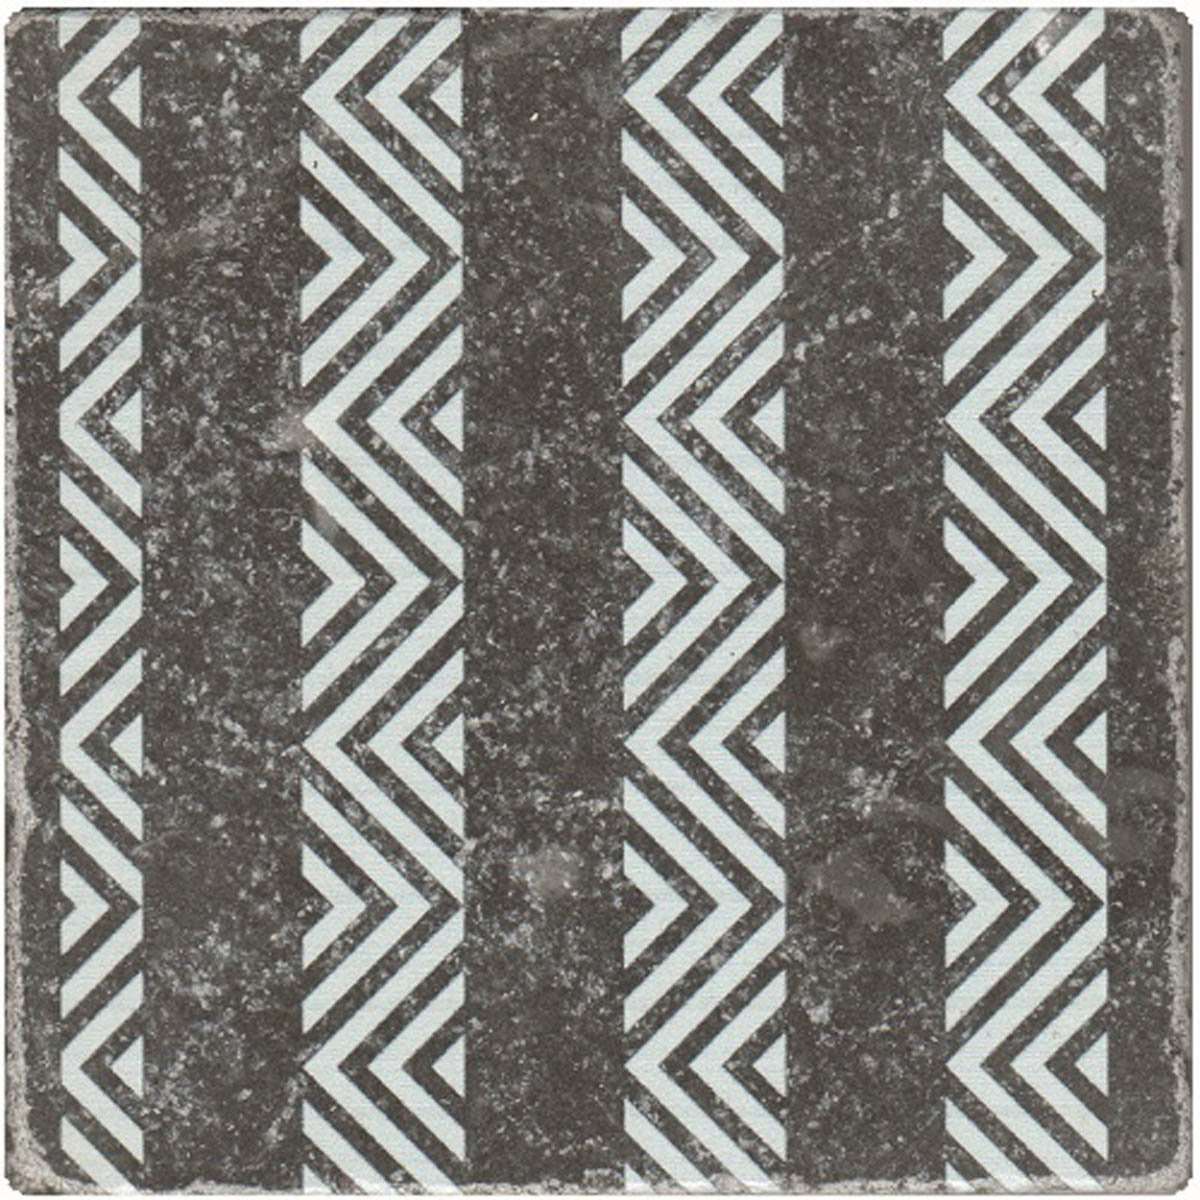 Керамическая плитка Stone4home Marble Black Motif №8, цвет чёрно-белый, поверхность матовая, квадрат, 100x100